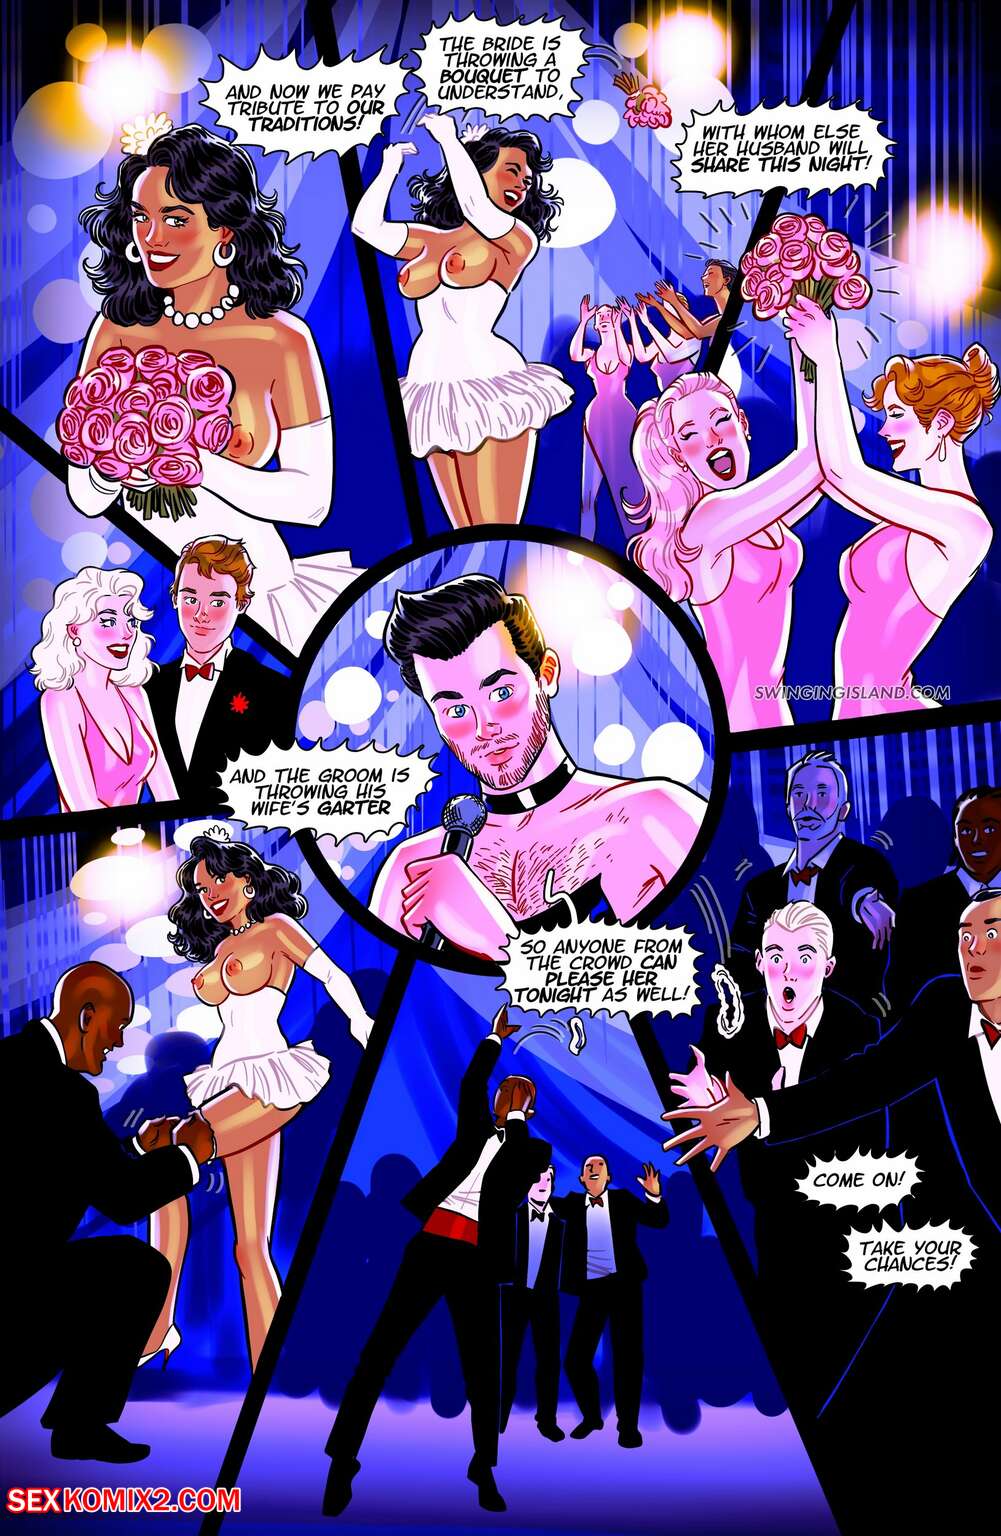 Carttons Adult Swingers Images - âœ…ï¸ Porn comic Swinging Island. Rita and Ricko wedding. Andrew Tarusov Sex  comic guy and the âœ…ï¸ | Andrew Tarusov | Porn comics hentai adult only |  wporncomics.com